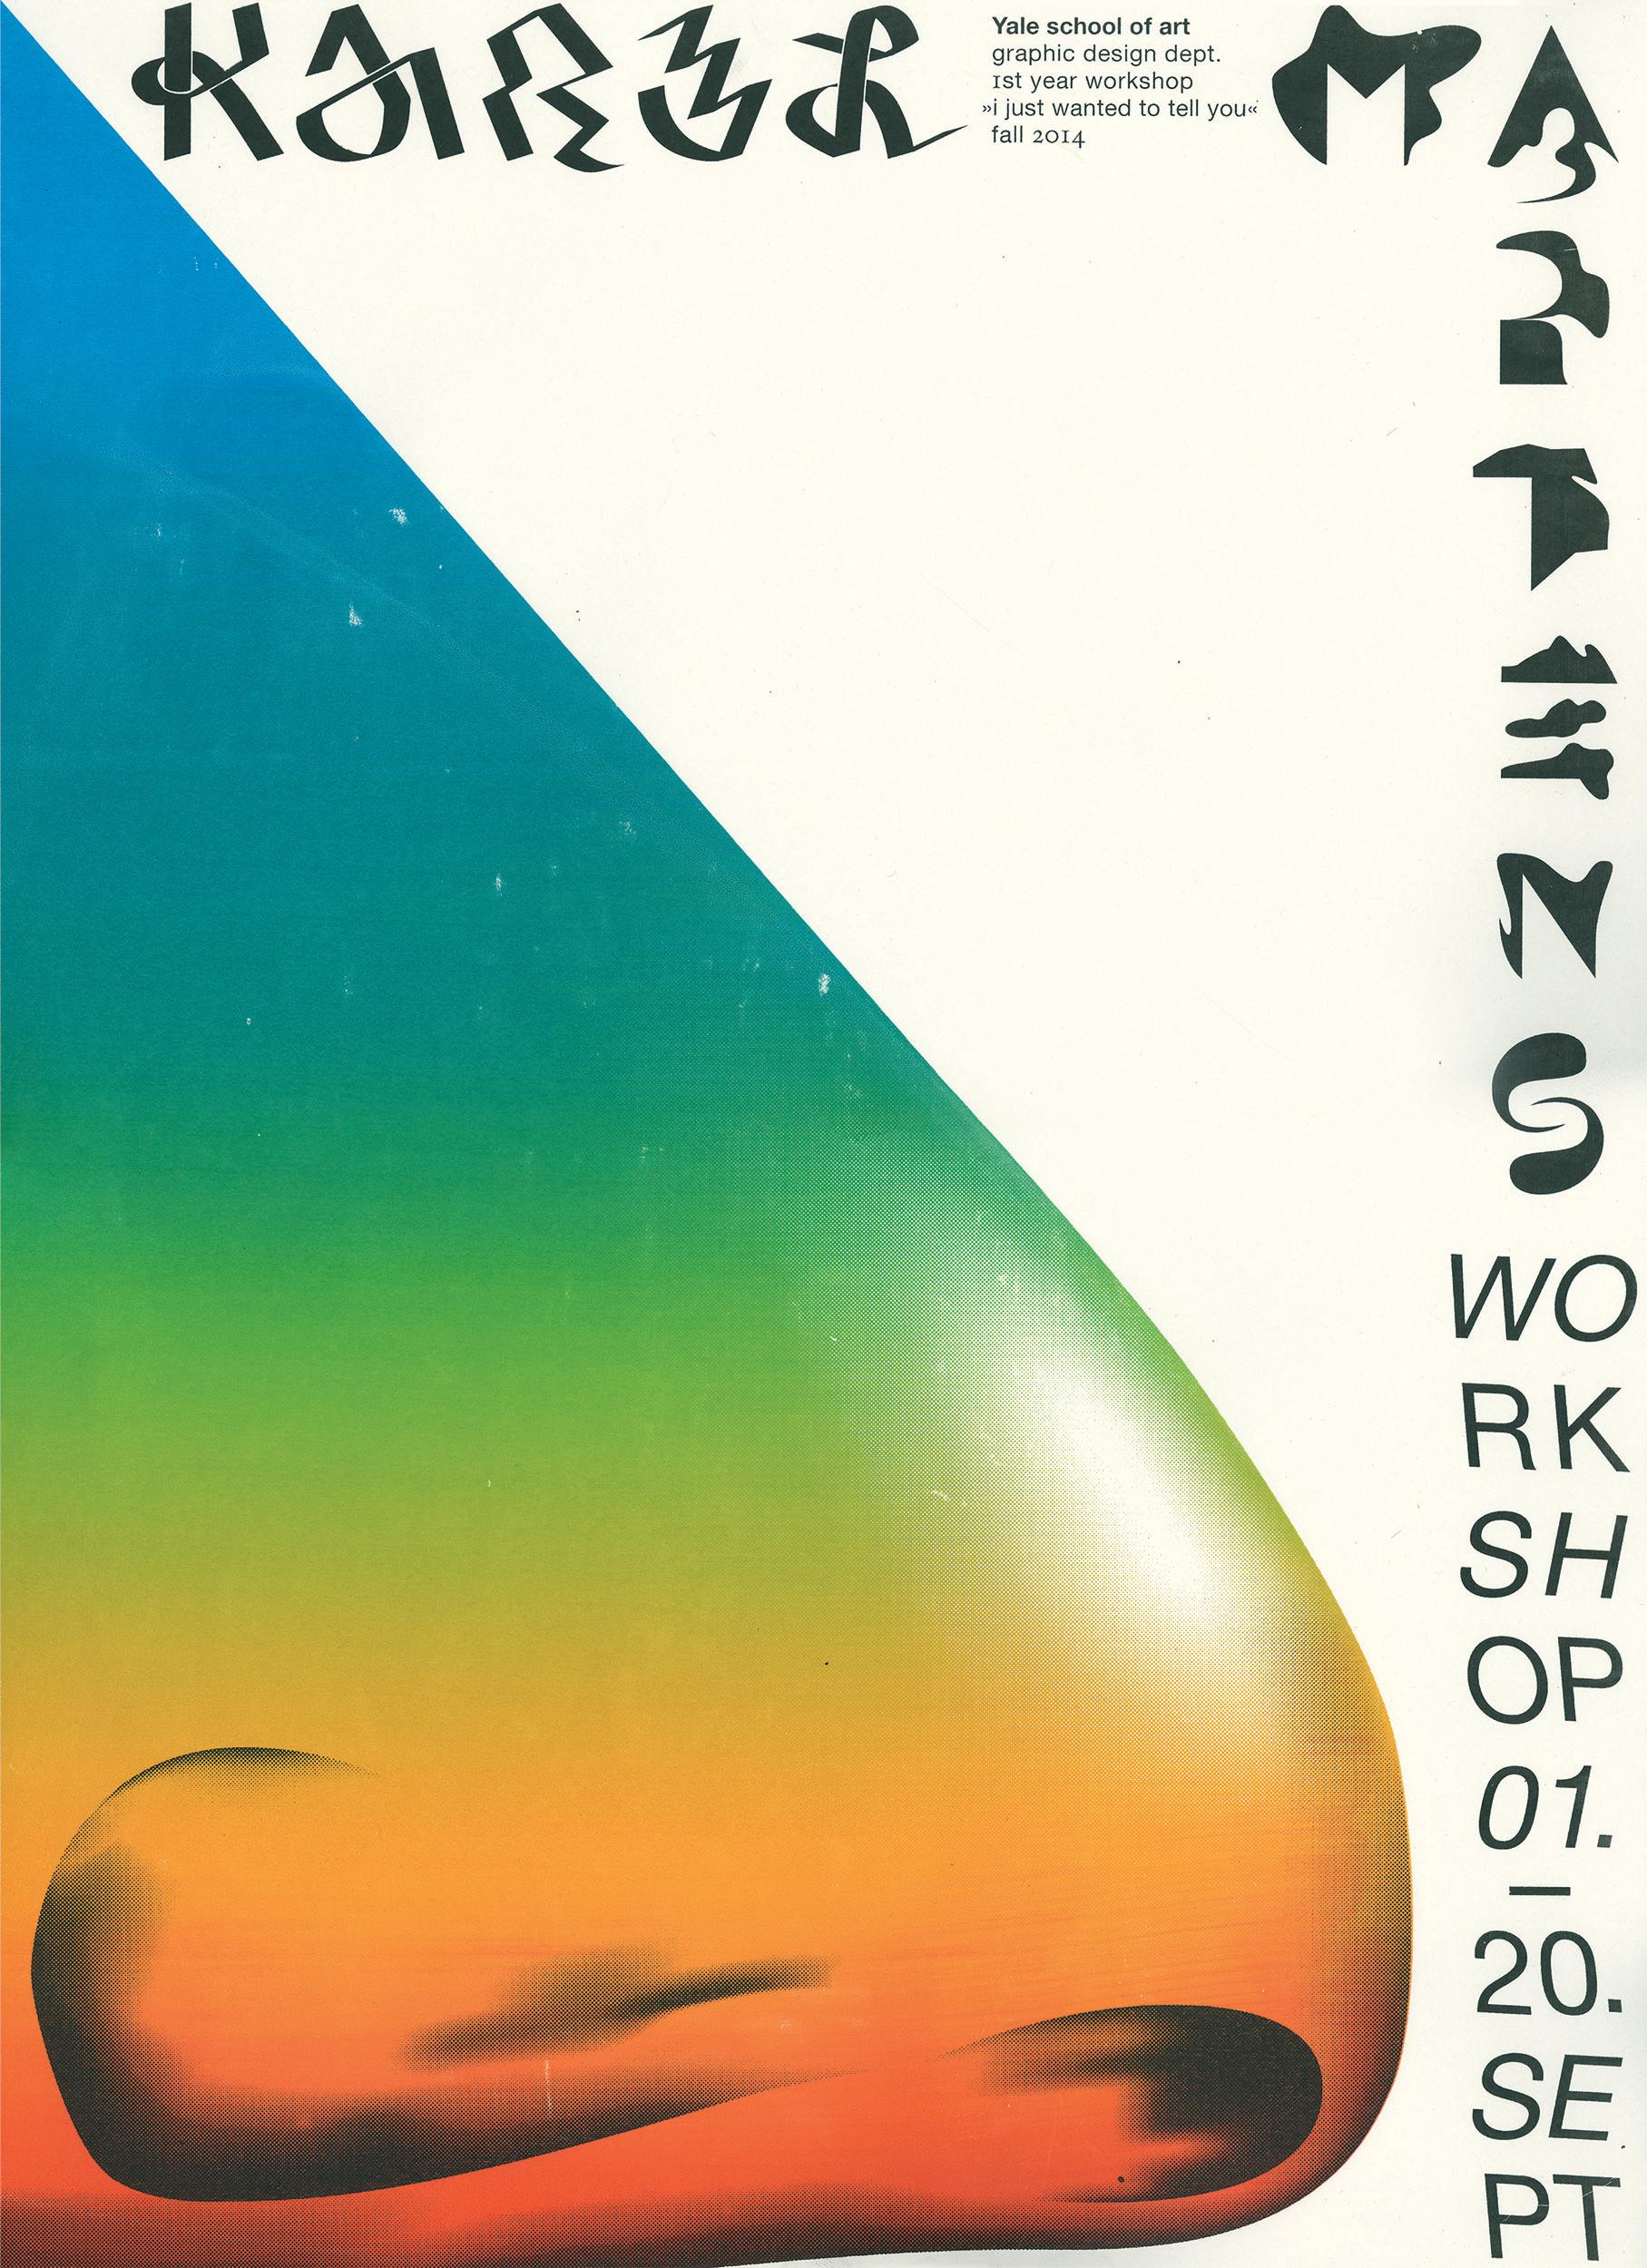 Poster for Karel Martens’s workshop, 2014